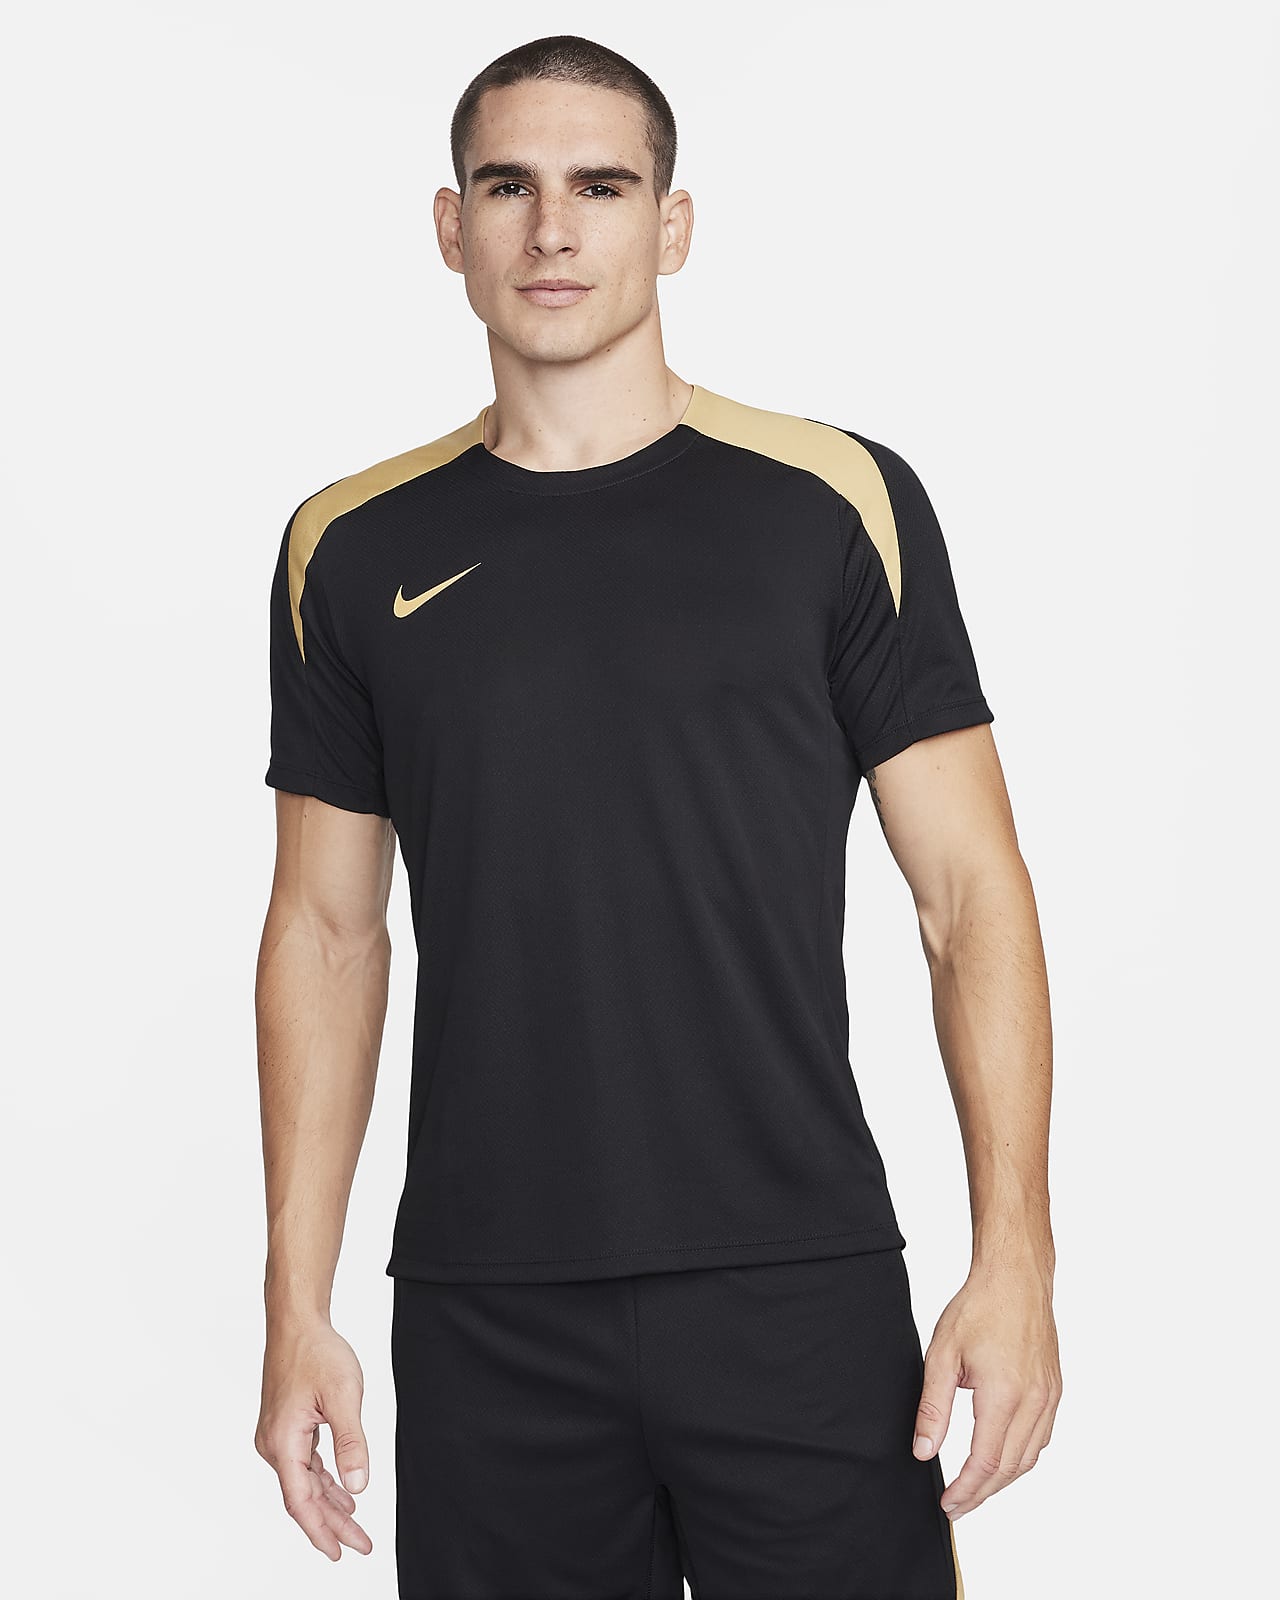 Ανδρική κοντομάνικη ποδοσφαιρική μπλούζα Dri-FIT Nike Strike